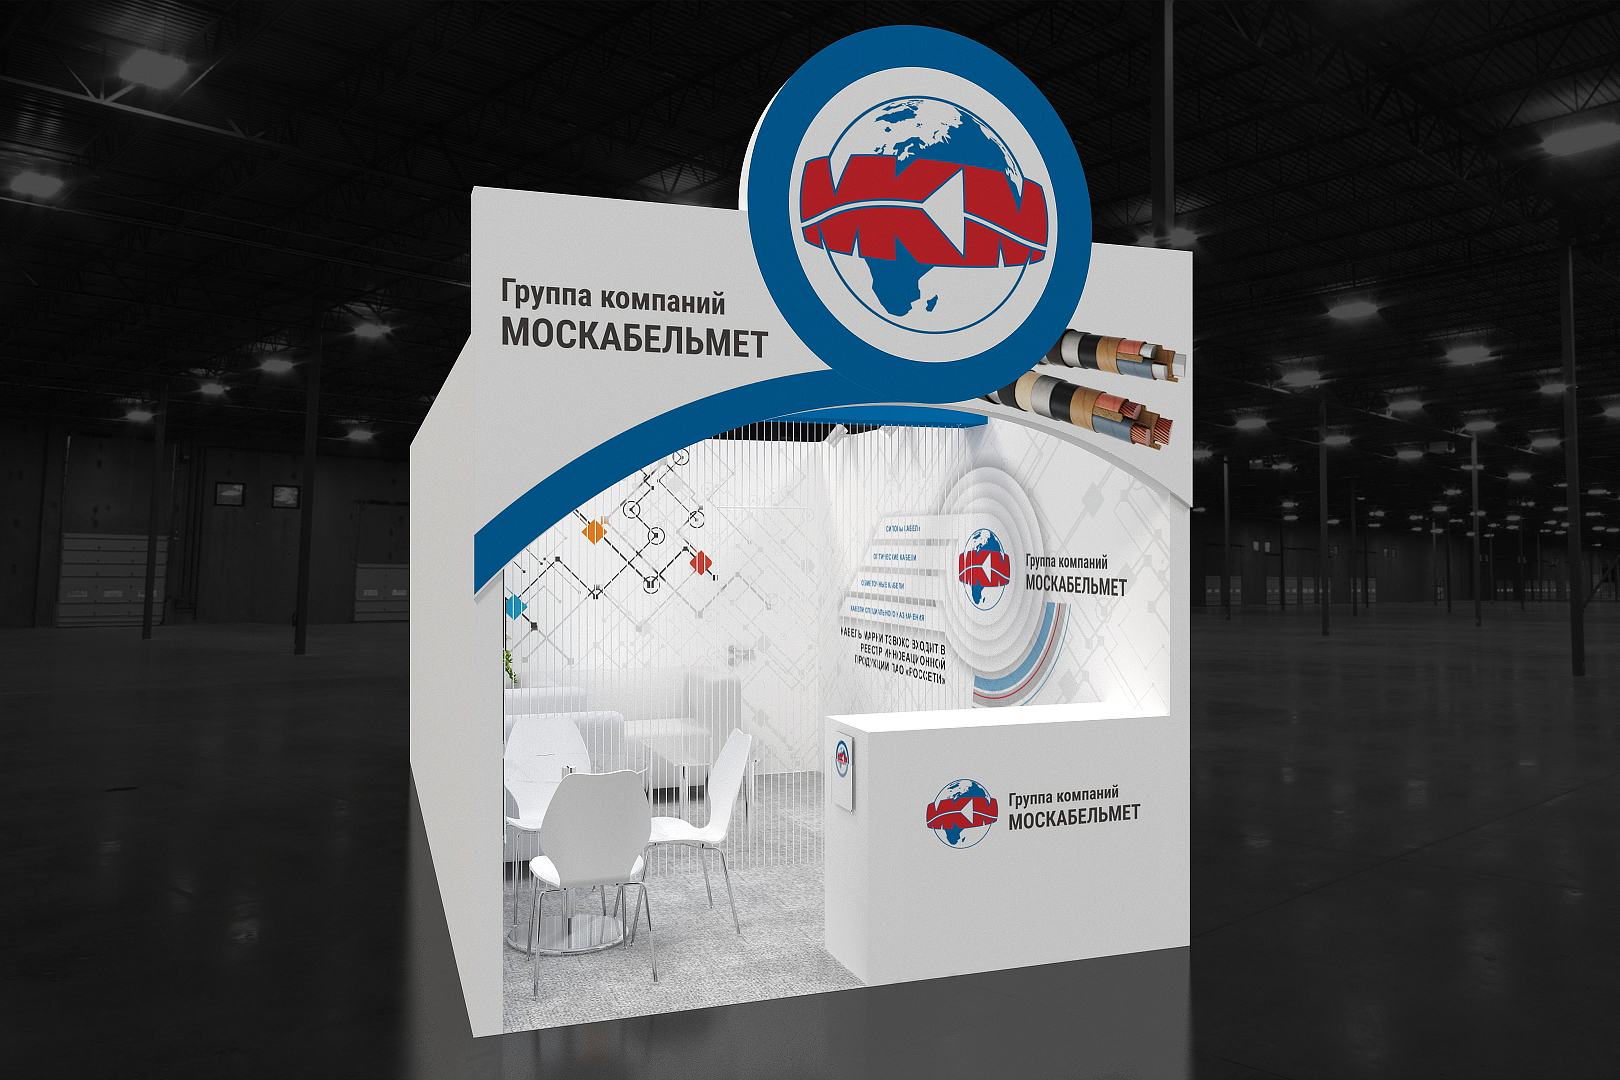 Дизайн-проект выставочного стенда «Москабельмет» для «Электрические сети России» 2019 